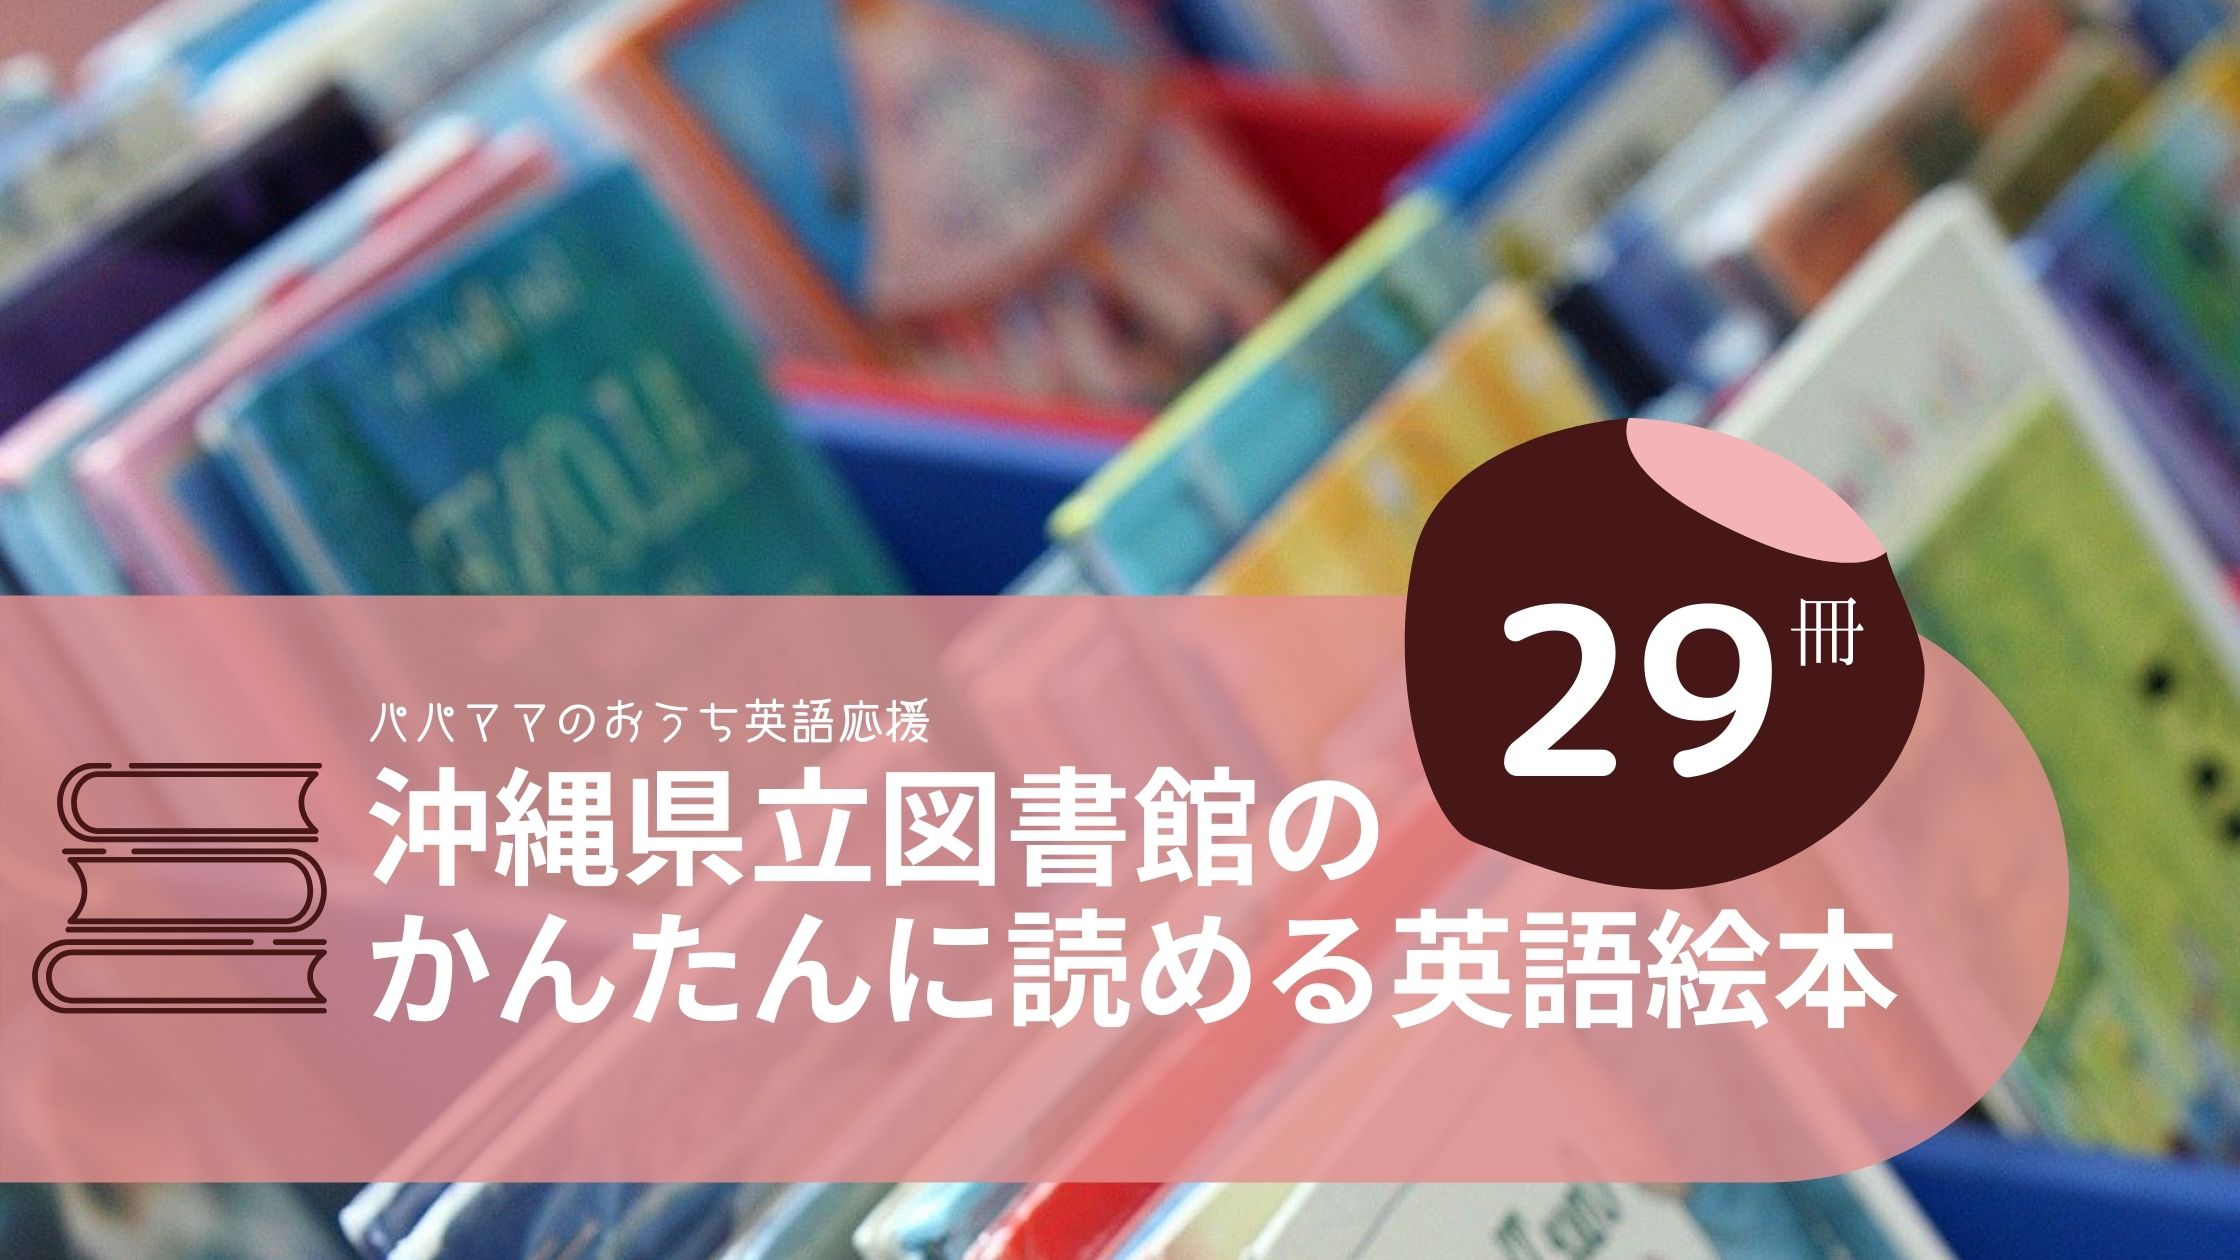 沖縄の簡単に読める英語絵本